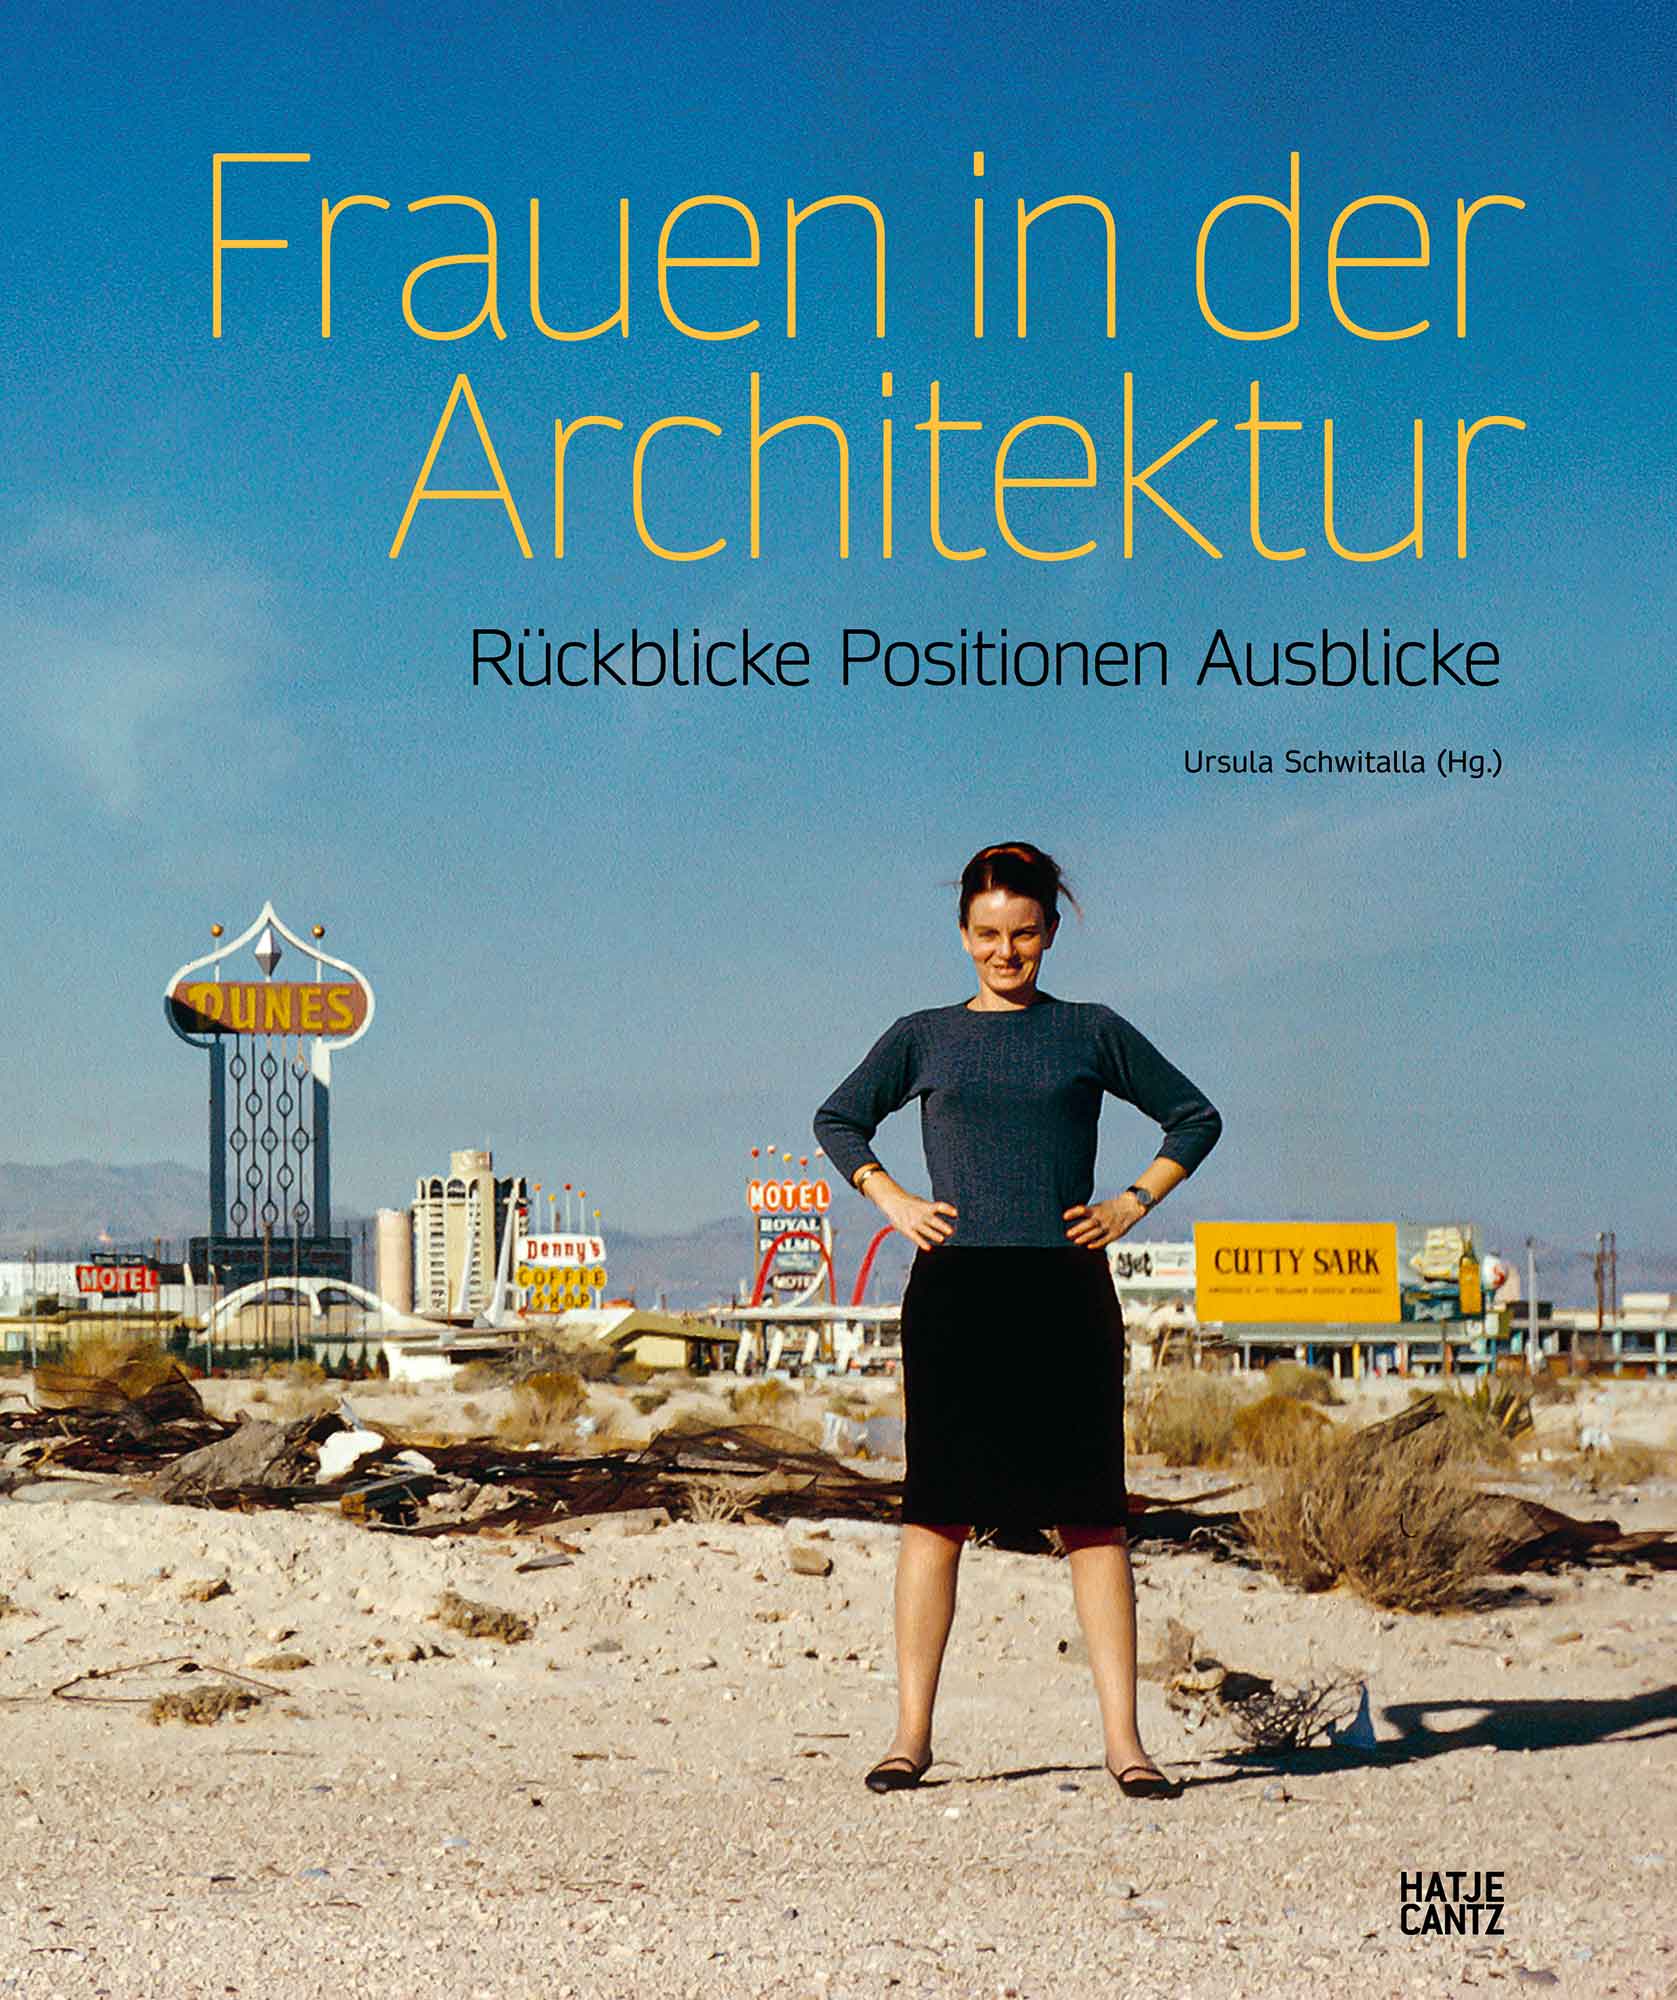 Frauen in der Architektur, Hatje Cantz